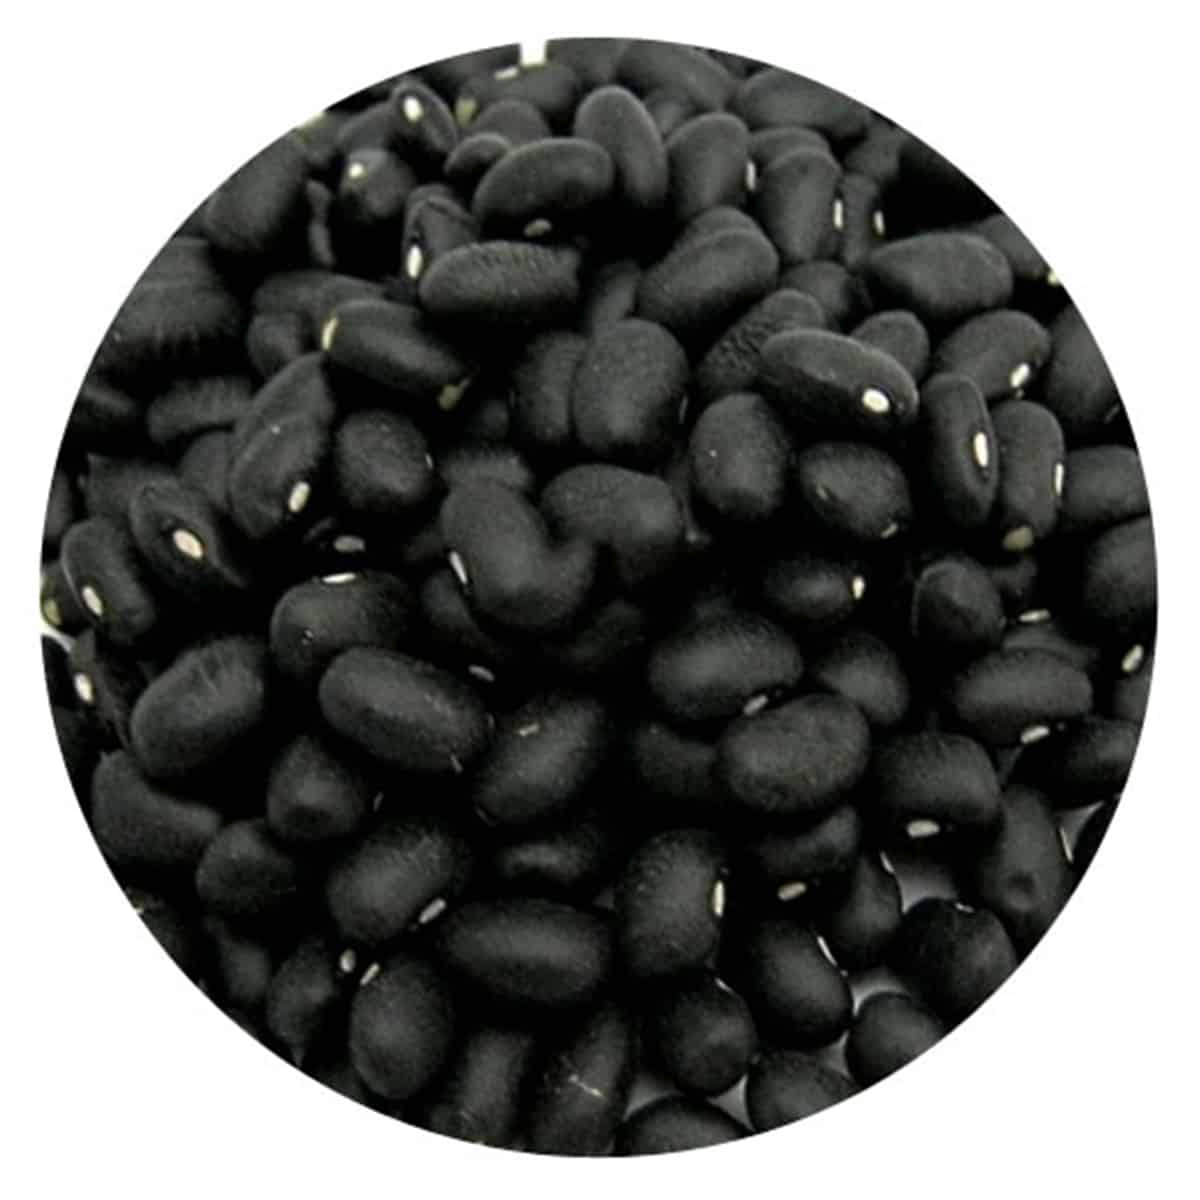 Buy IAG Foods Dried Black Turtle Beans - 1 kg